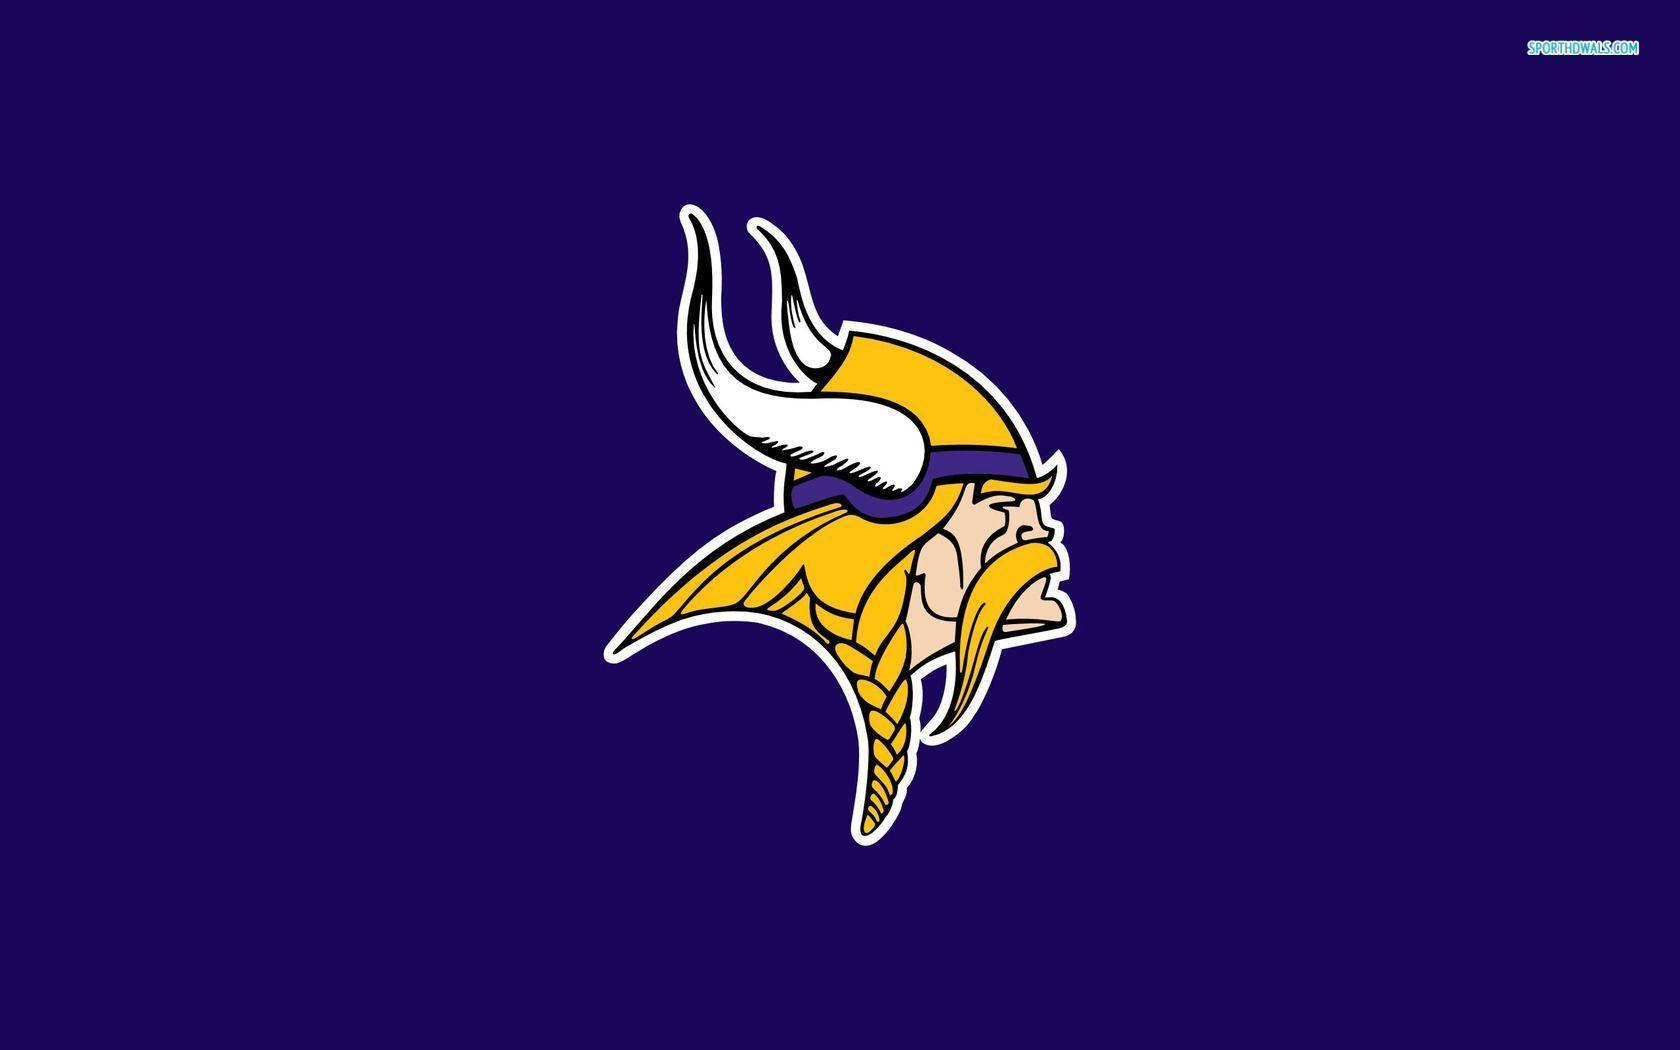 Minnesota Vikings | Pride & Unity Background